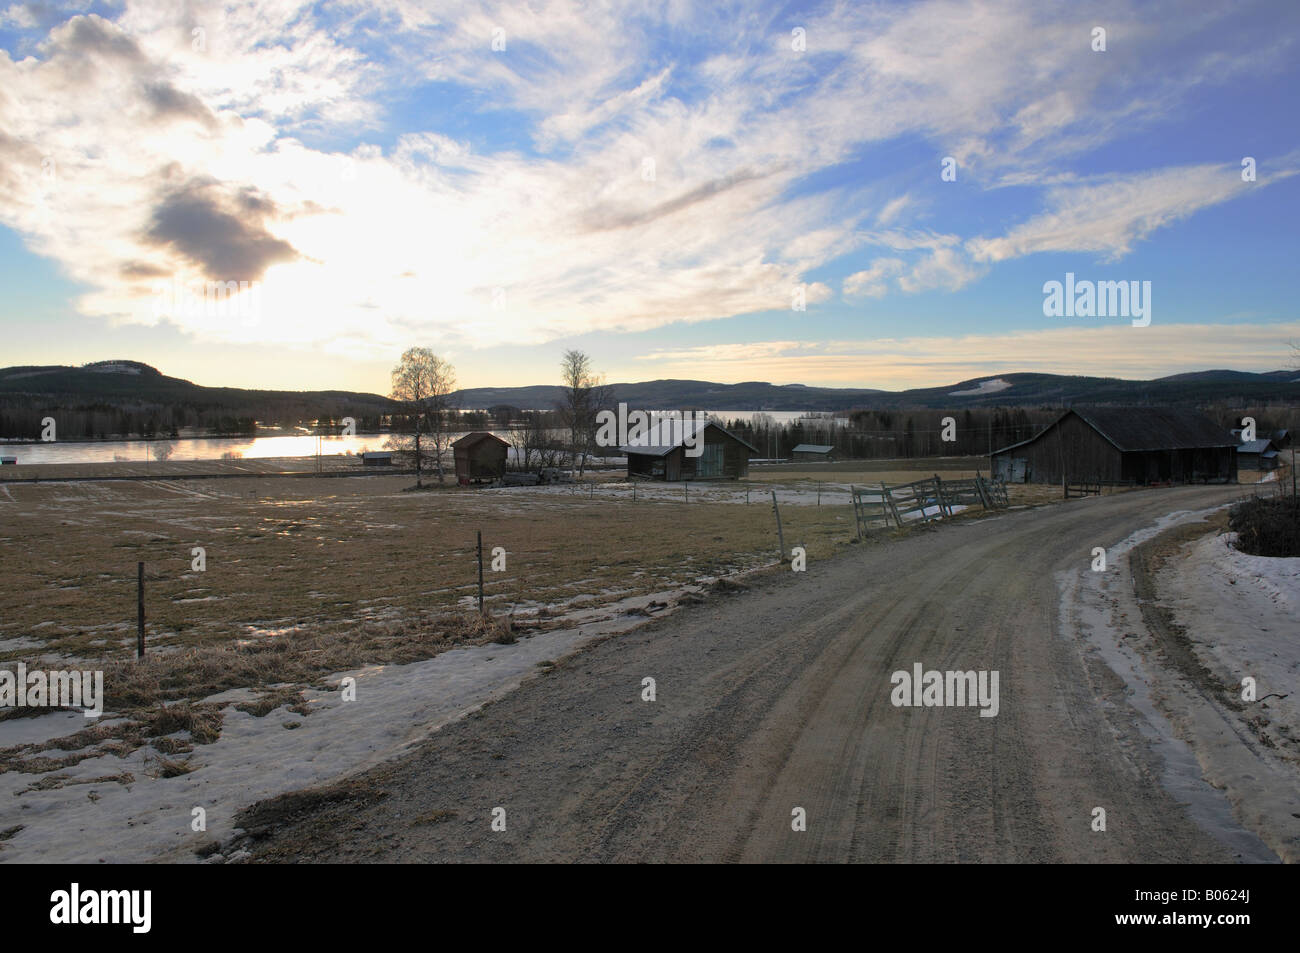 Village in Sweden Stock Photo